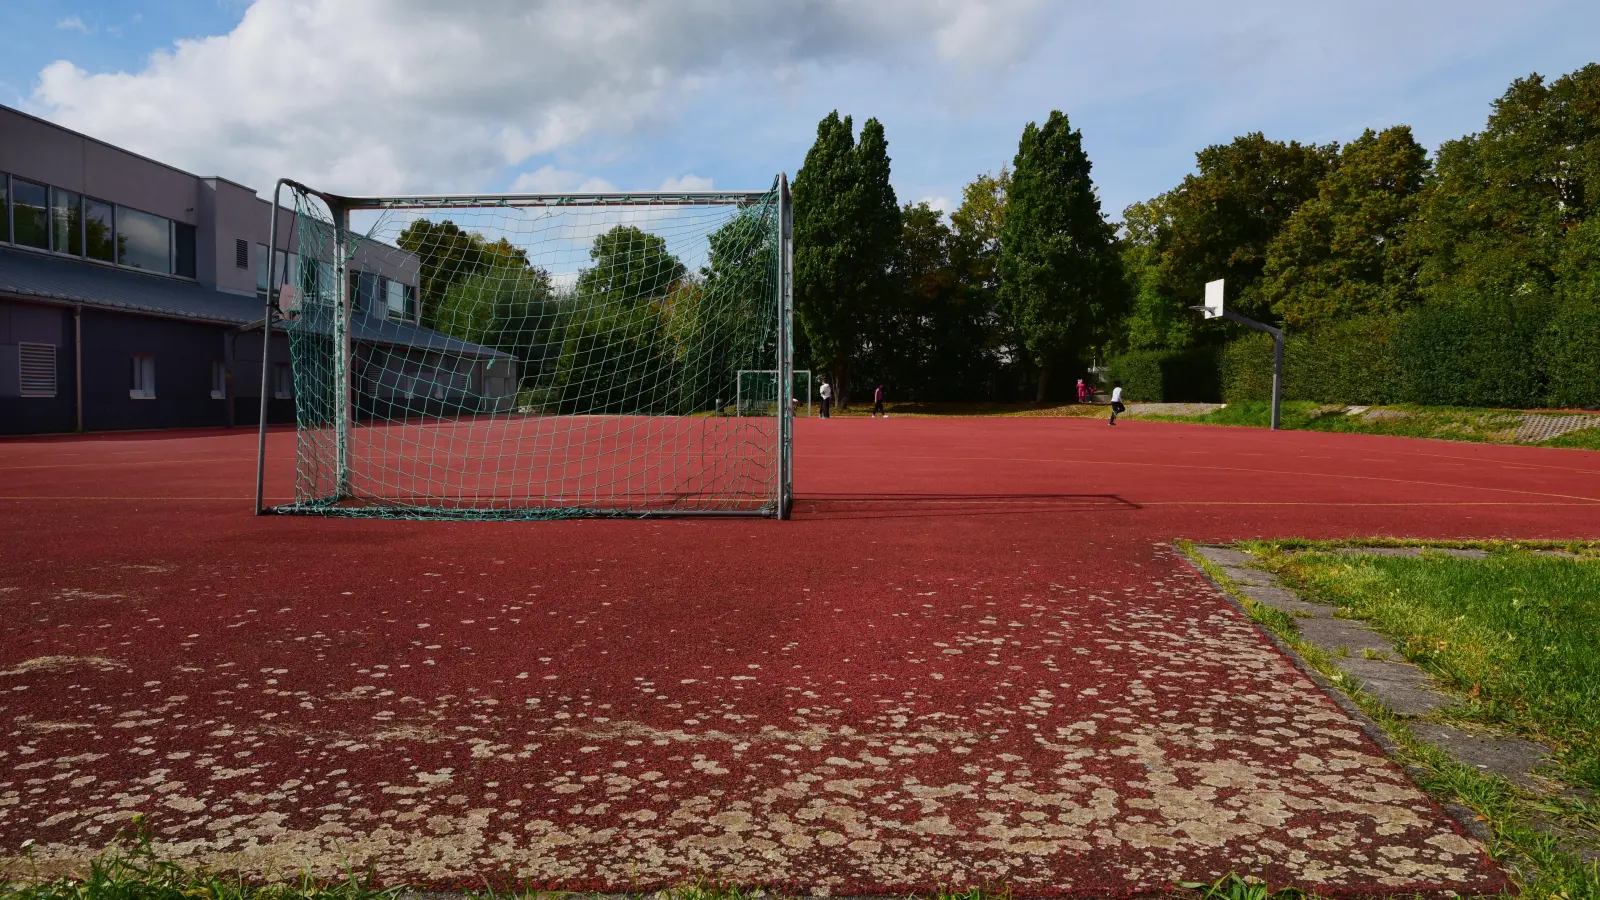 Bei der Sanierung des Sportplatzes an der Weinbergschule sollen Maßnahmen auf die Folgejahre verschoben werden. So will man im aktuellen Haushalt 365.000 Euro einsparen.  (Foto: Irmeli Pohl)